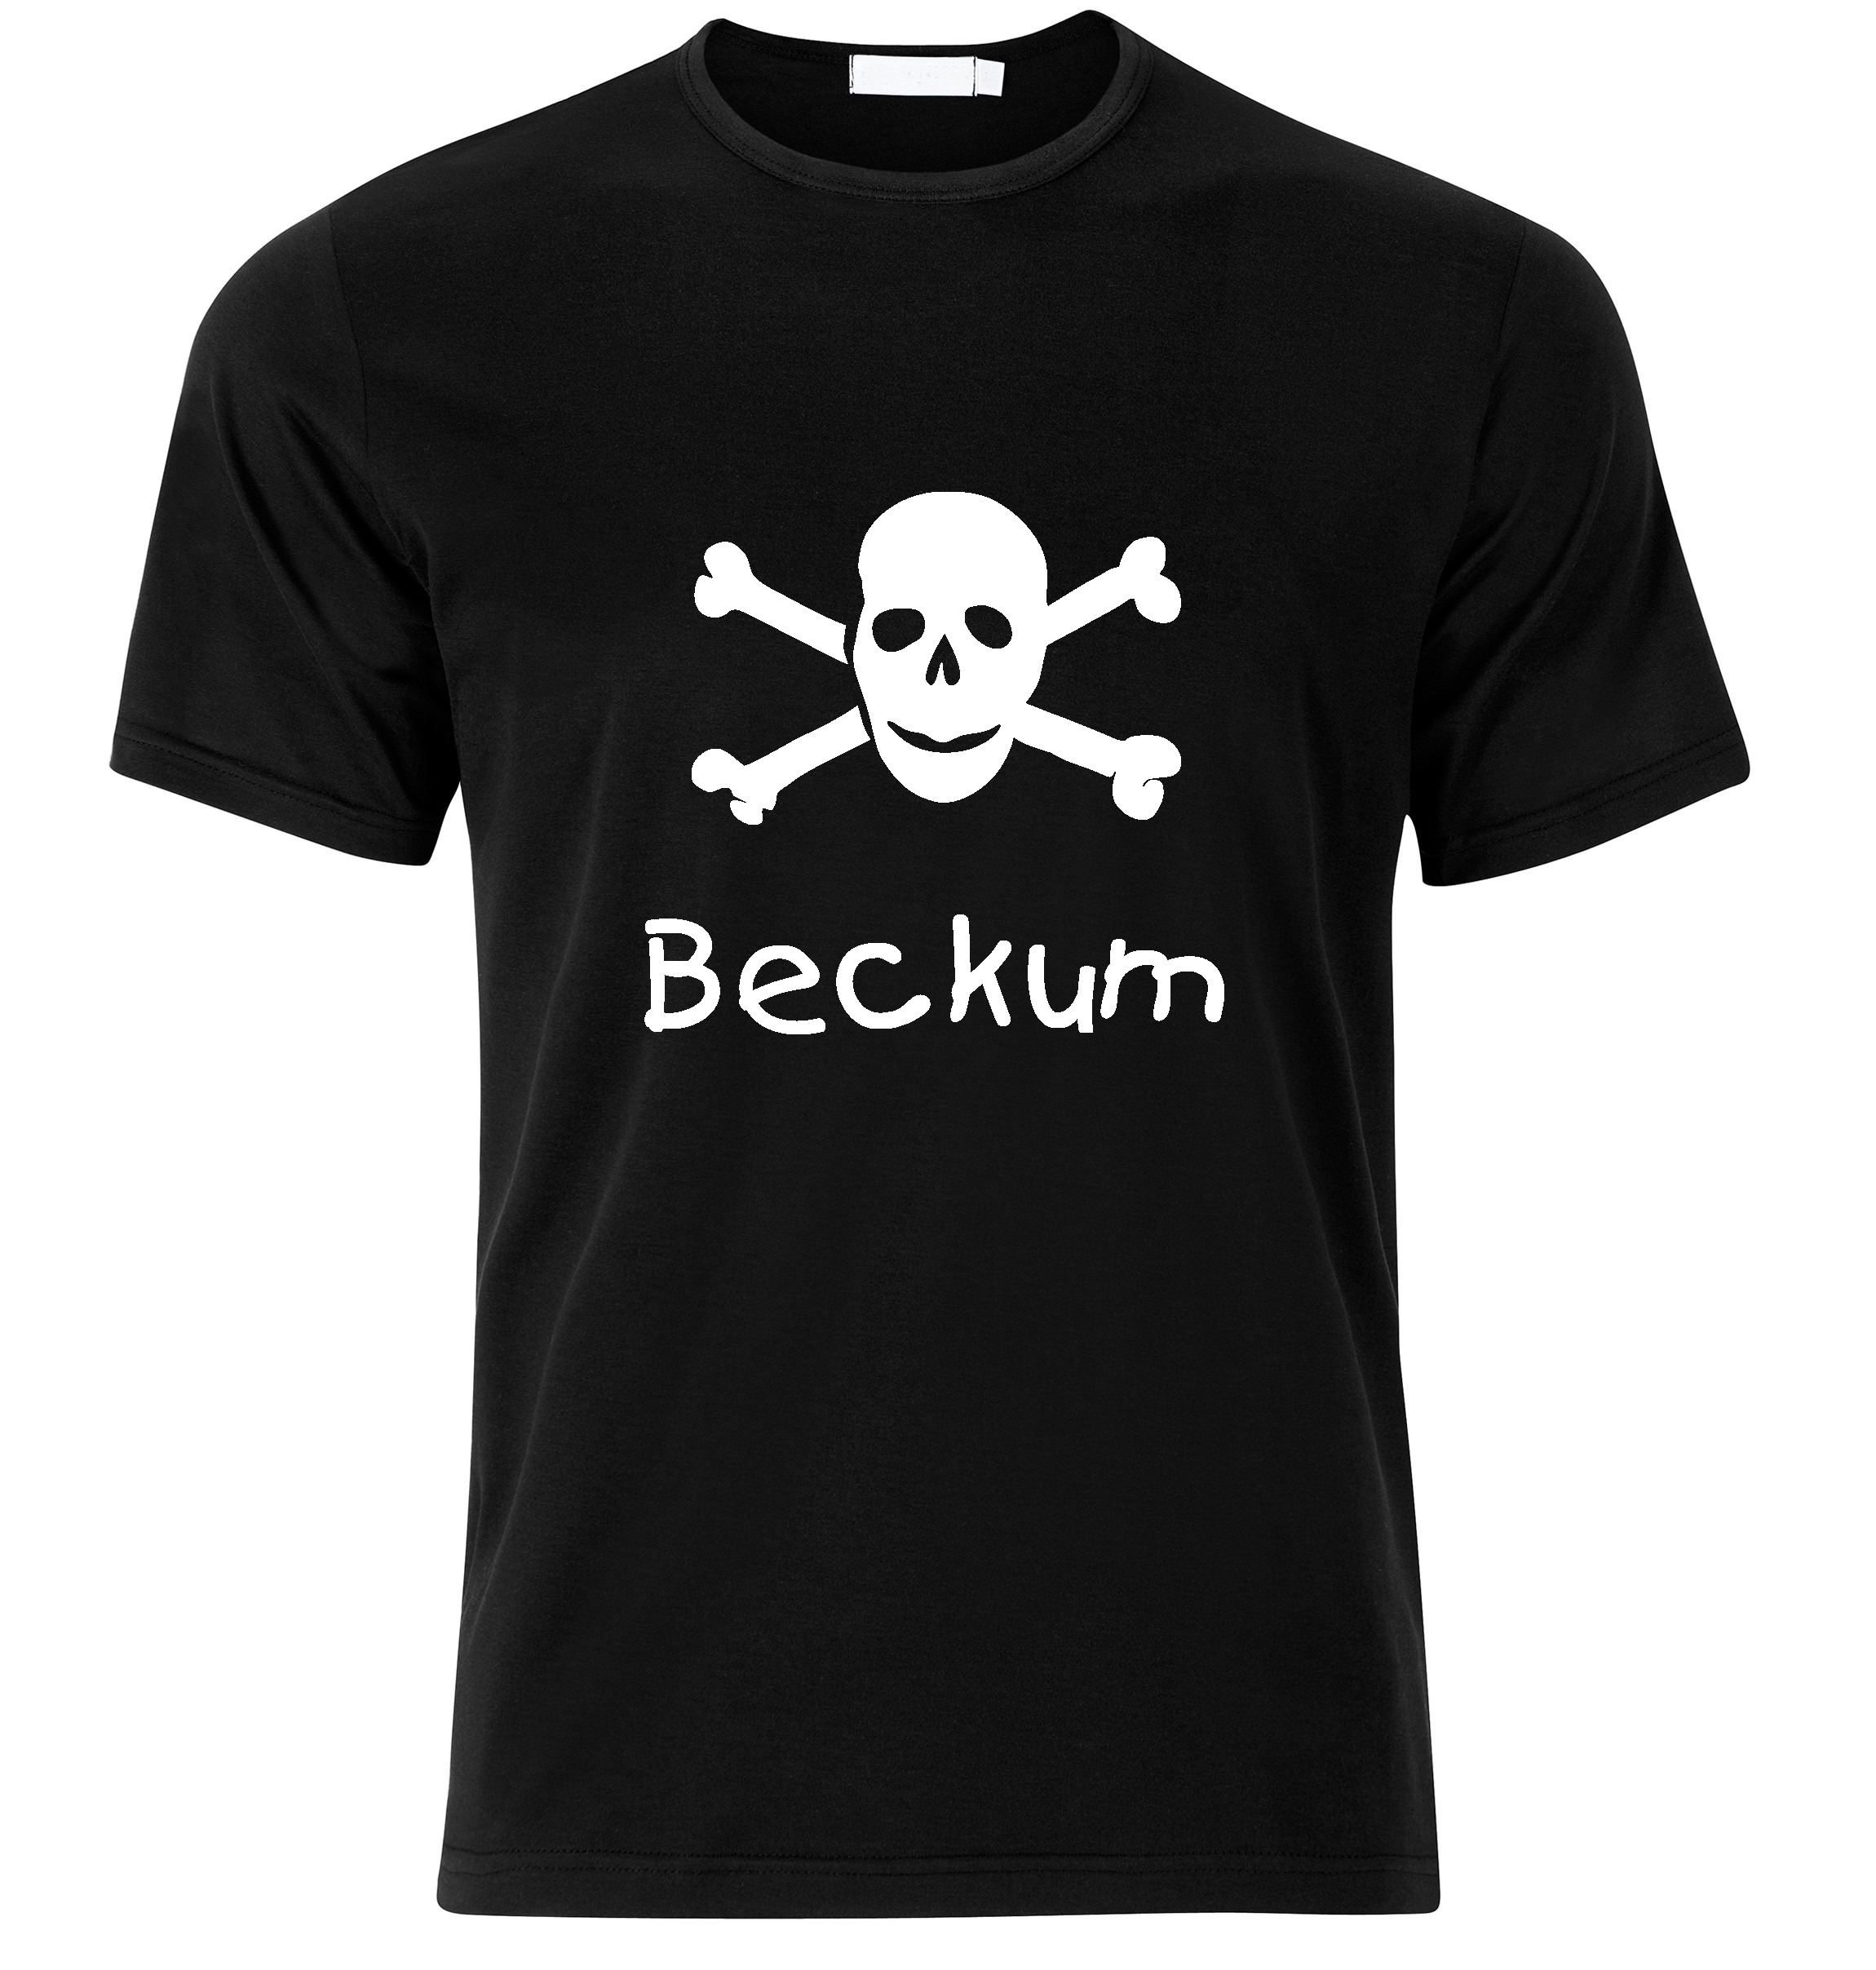 T-Shirt Beckum Jolly Roger, Totenkopf